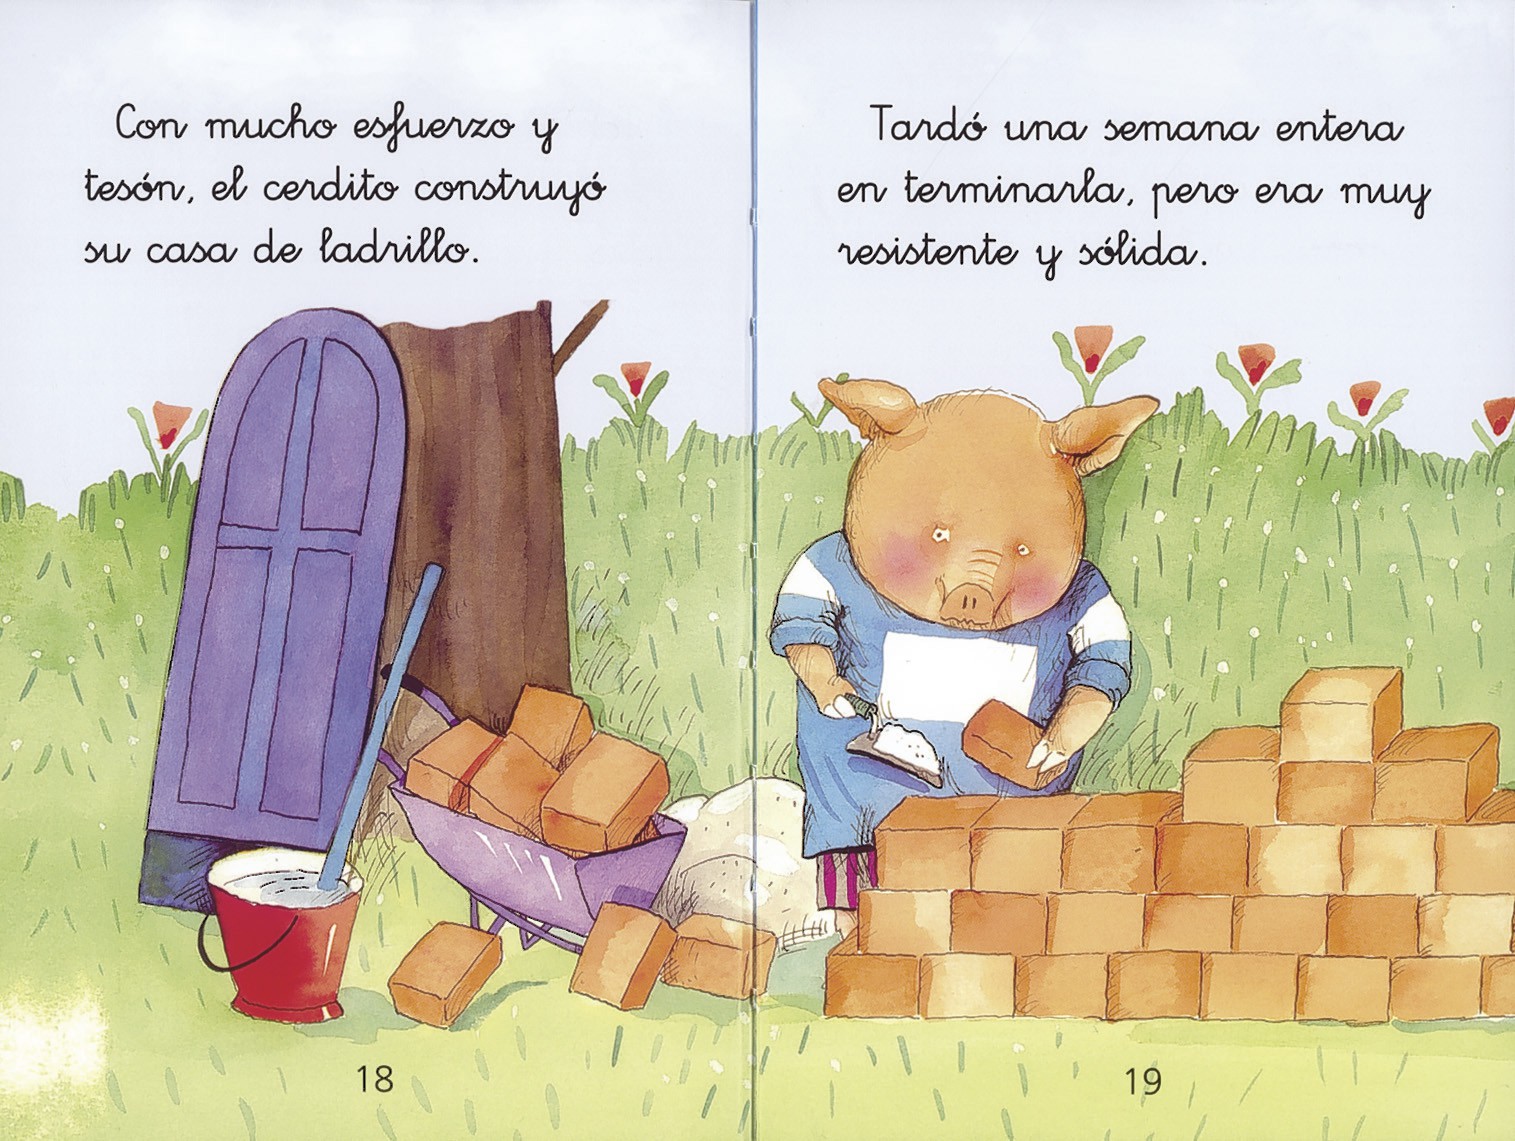  Los tres cerditos (Spanish Edition) eBook : Susaeta Ediciones  S.A.: Kindle Store